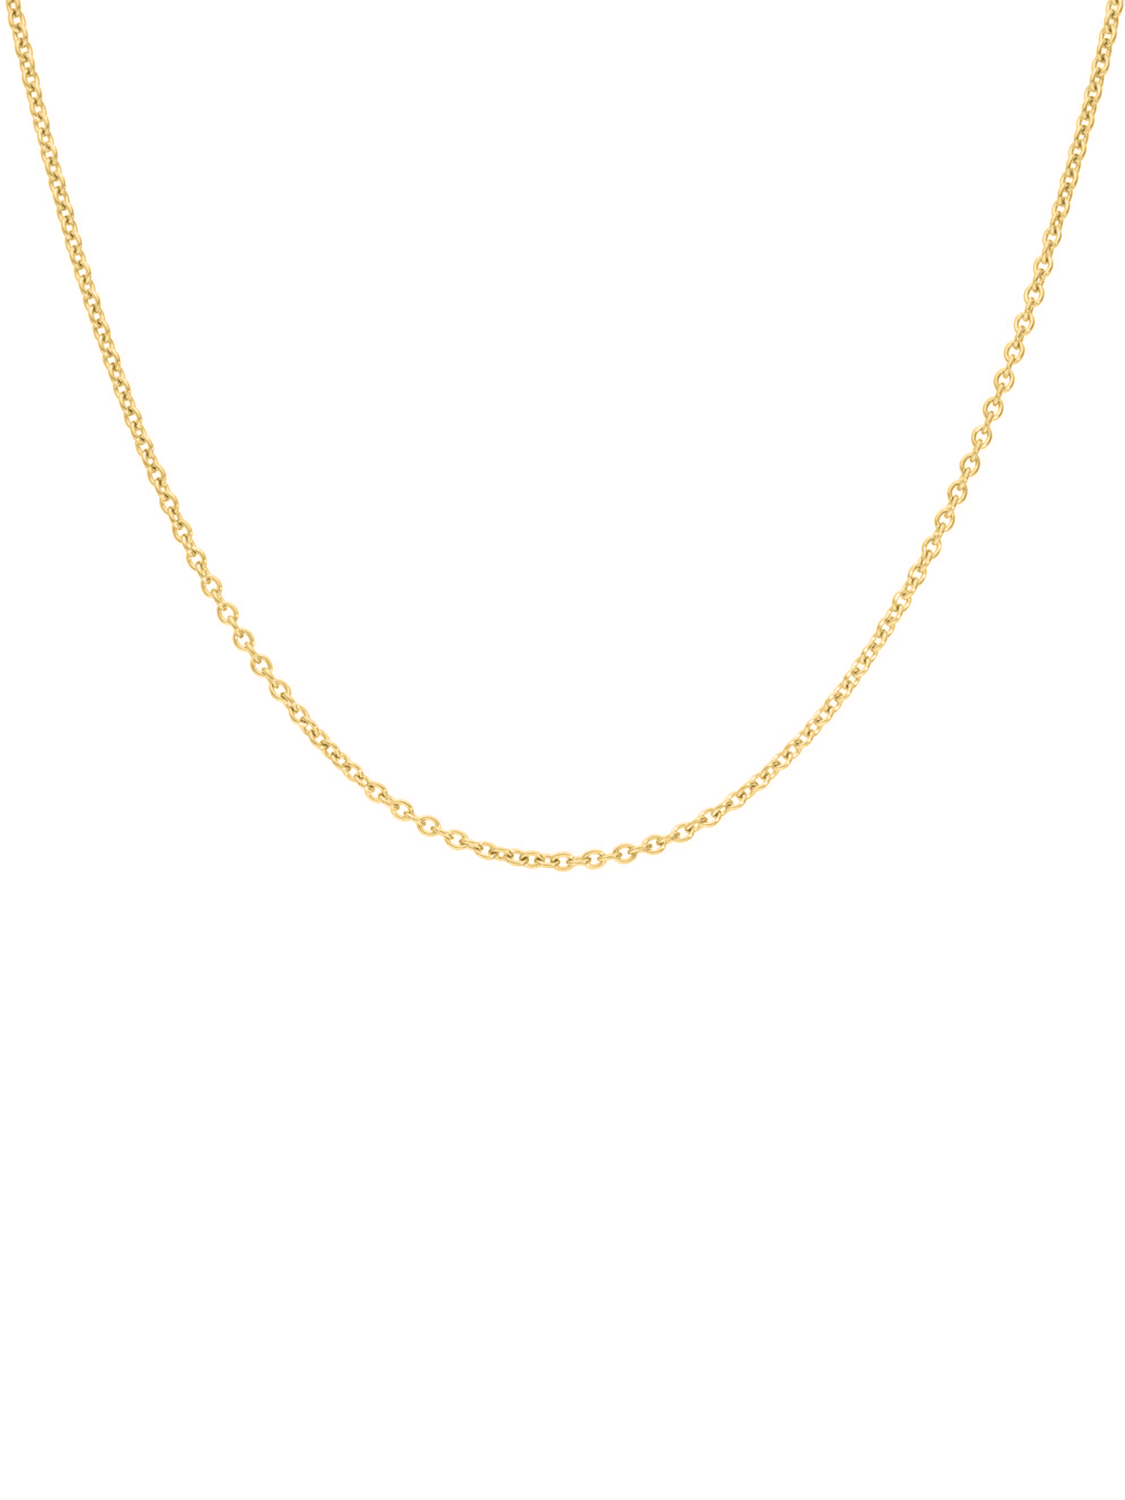 Kordoubt - Halskette 585 Gelbgold Federring - Breite 1,5 mm - Länge 40 cm